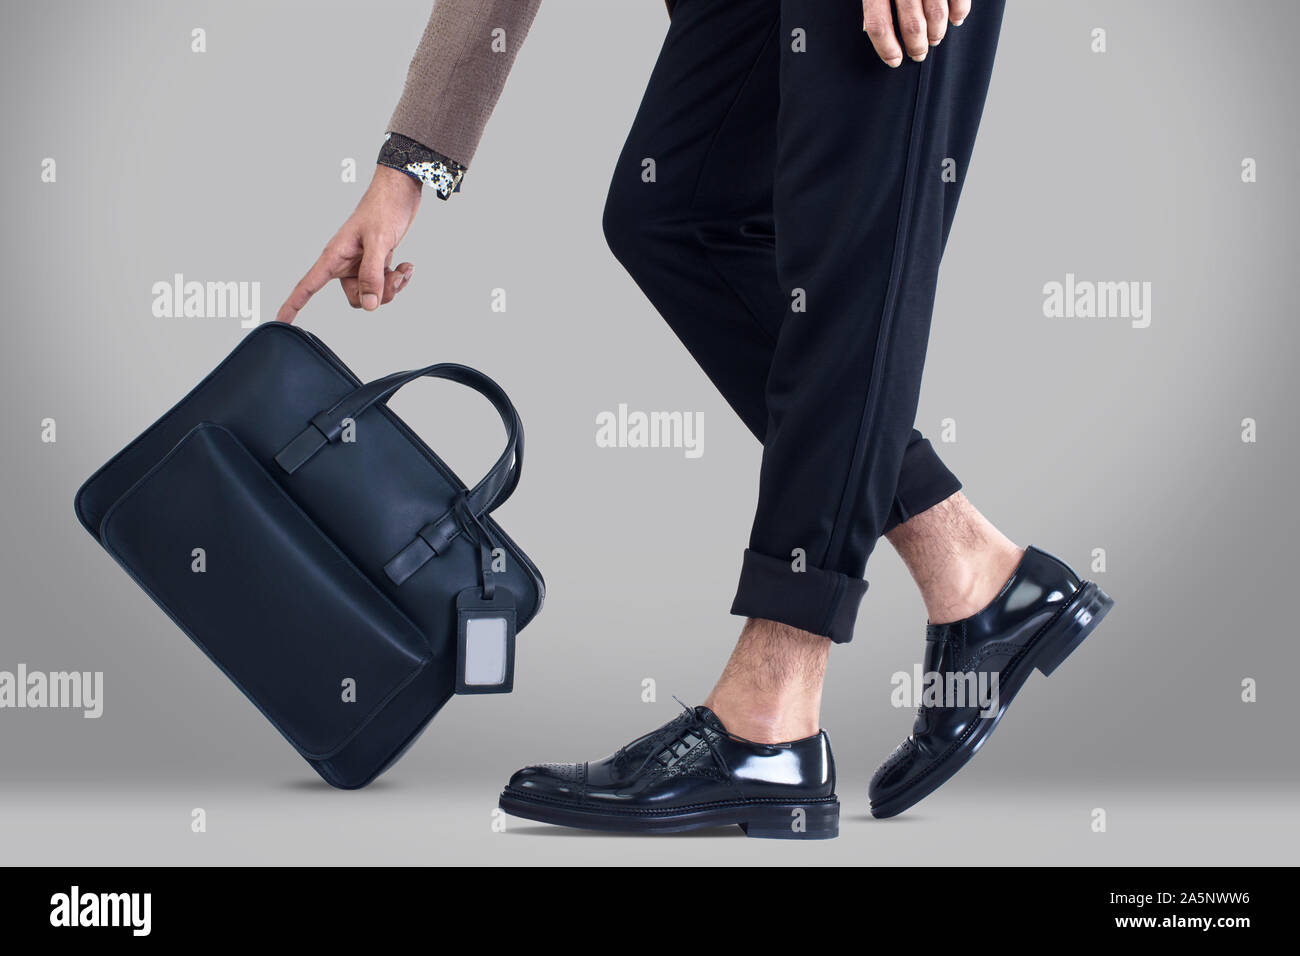 Smart Business Kleidung mit Tragetasche, No-Name-Marken für Werbekampagnen, Corporate Business Bilder Stockfoto